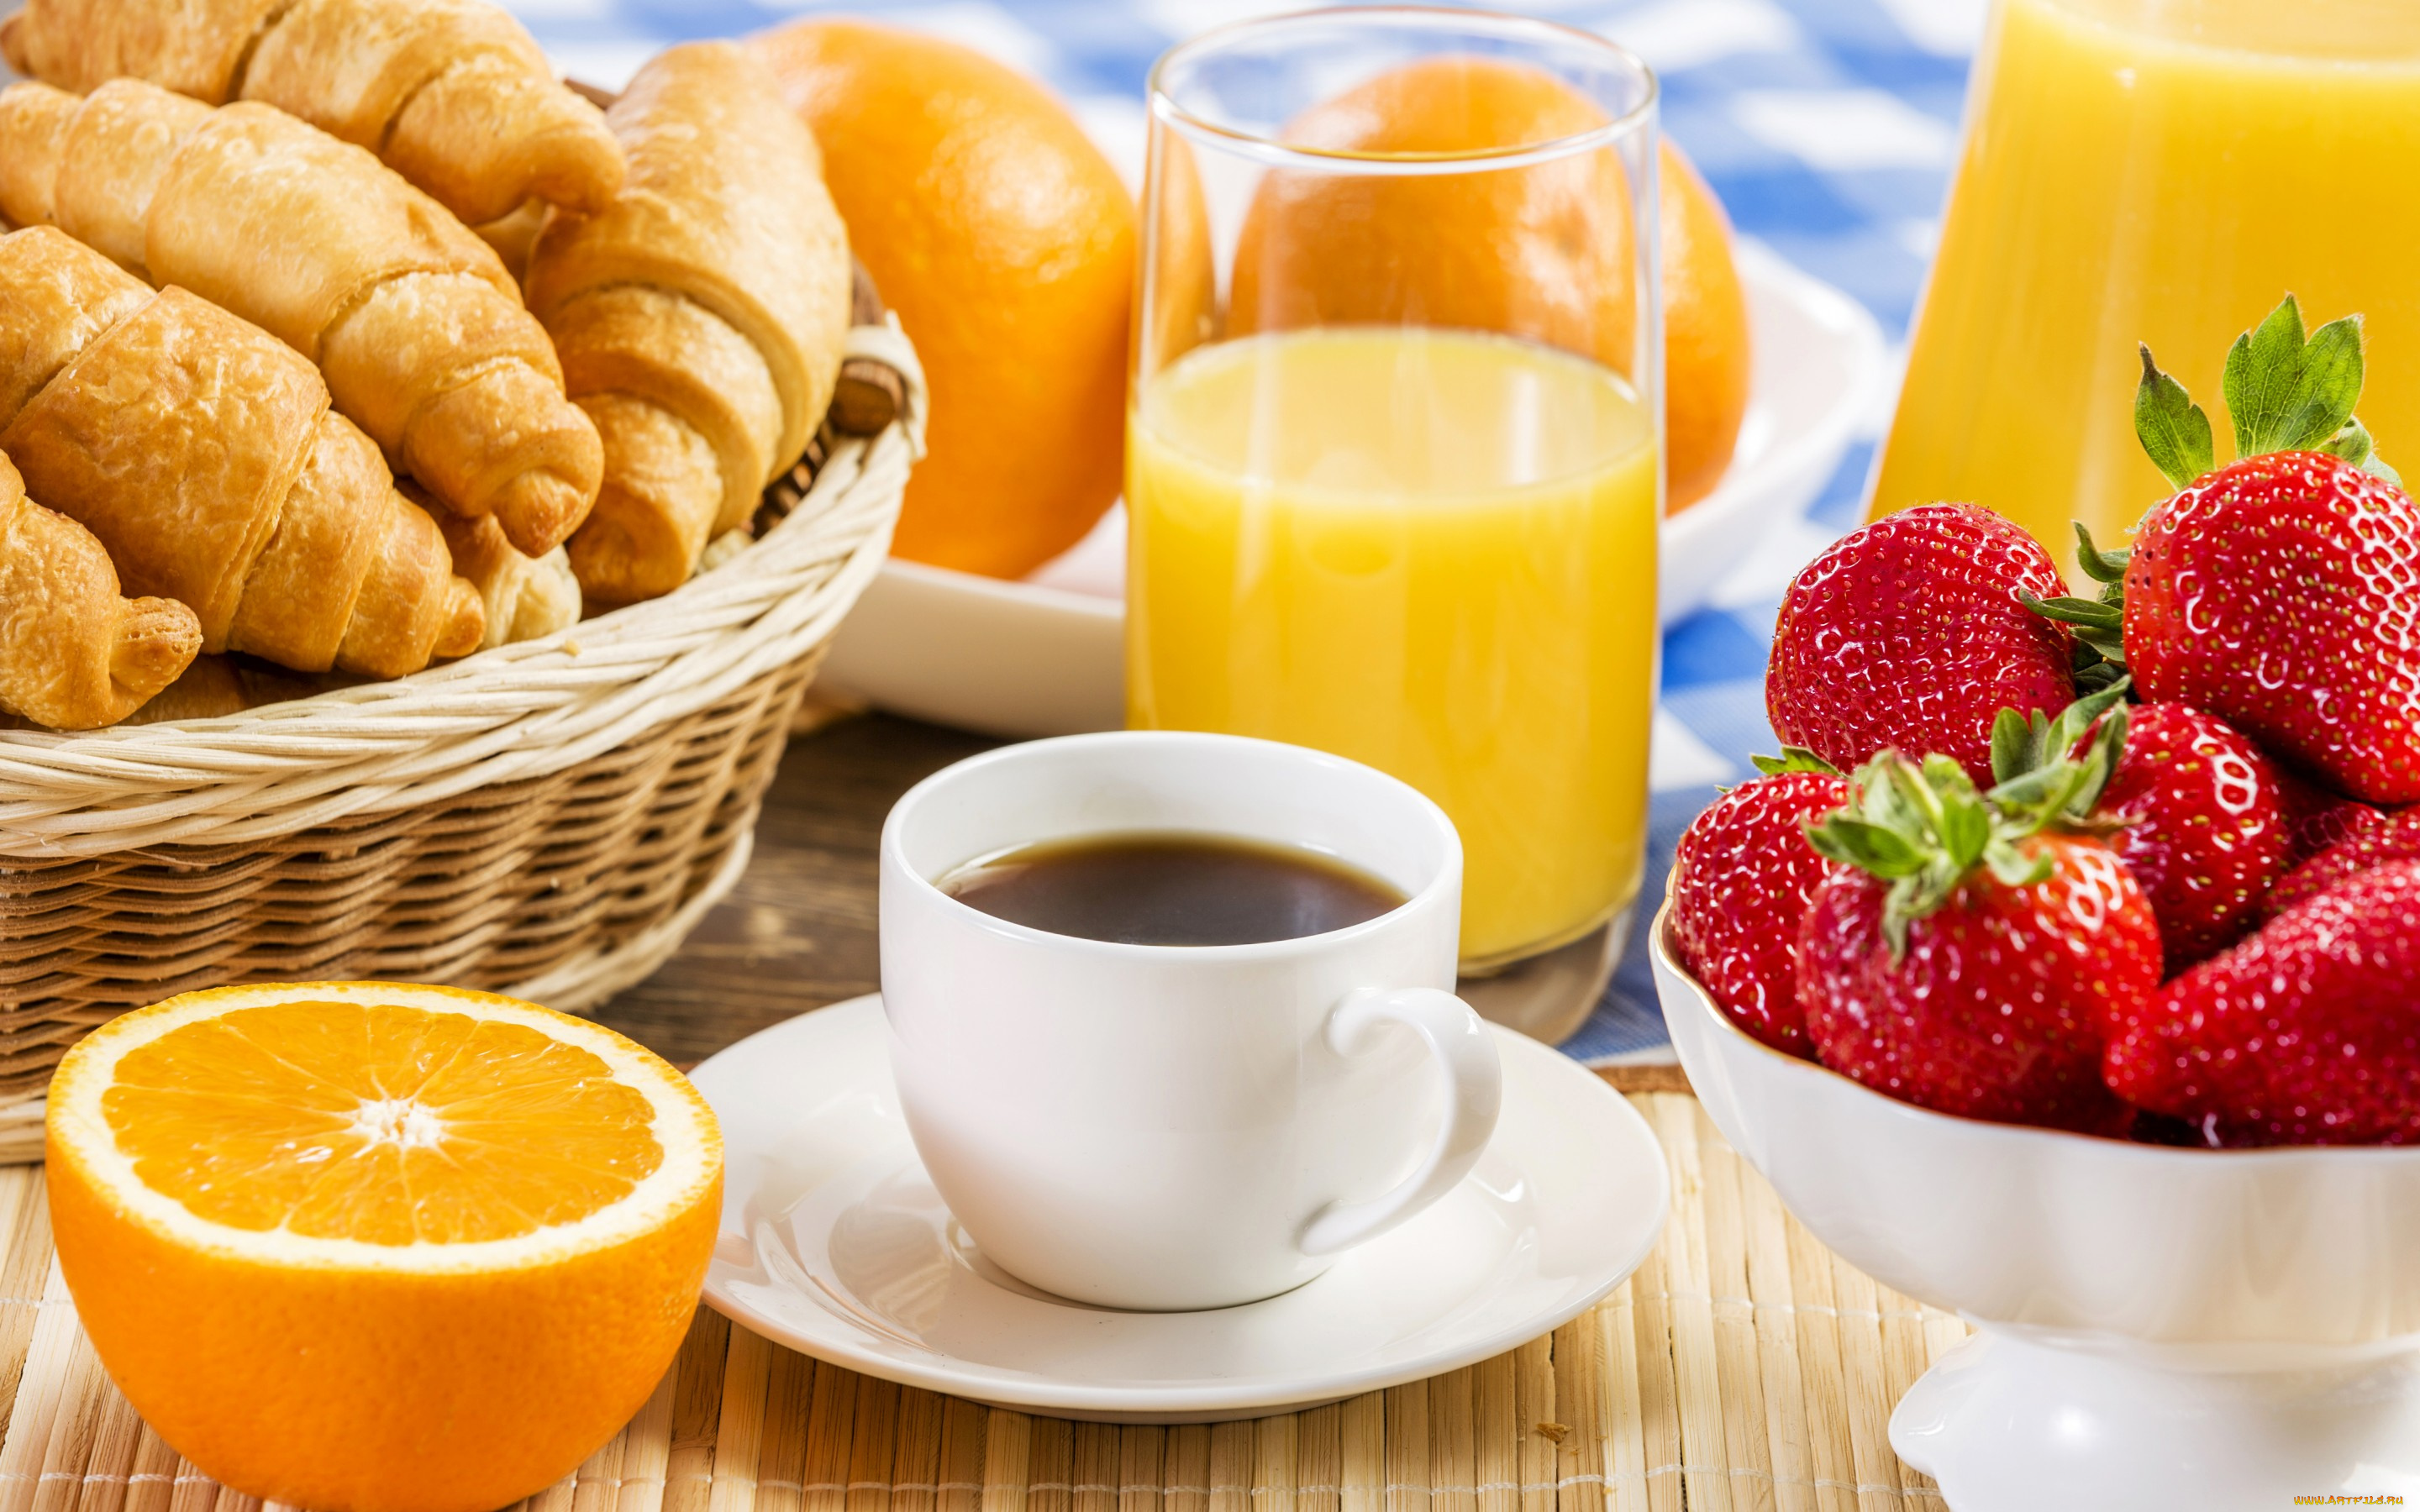 еда, разное, orange, strawberry, croissant, juice, coffee, апельсины, выпечка, клубника, круассаны, сок, кофе